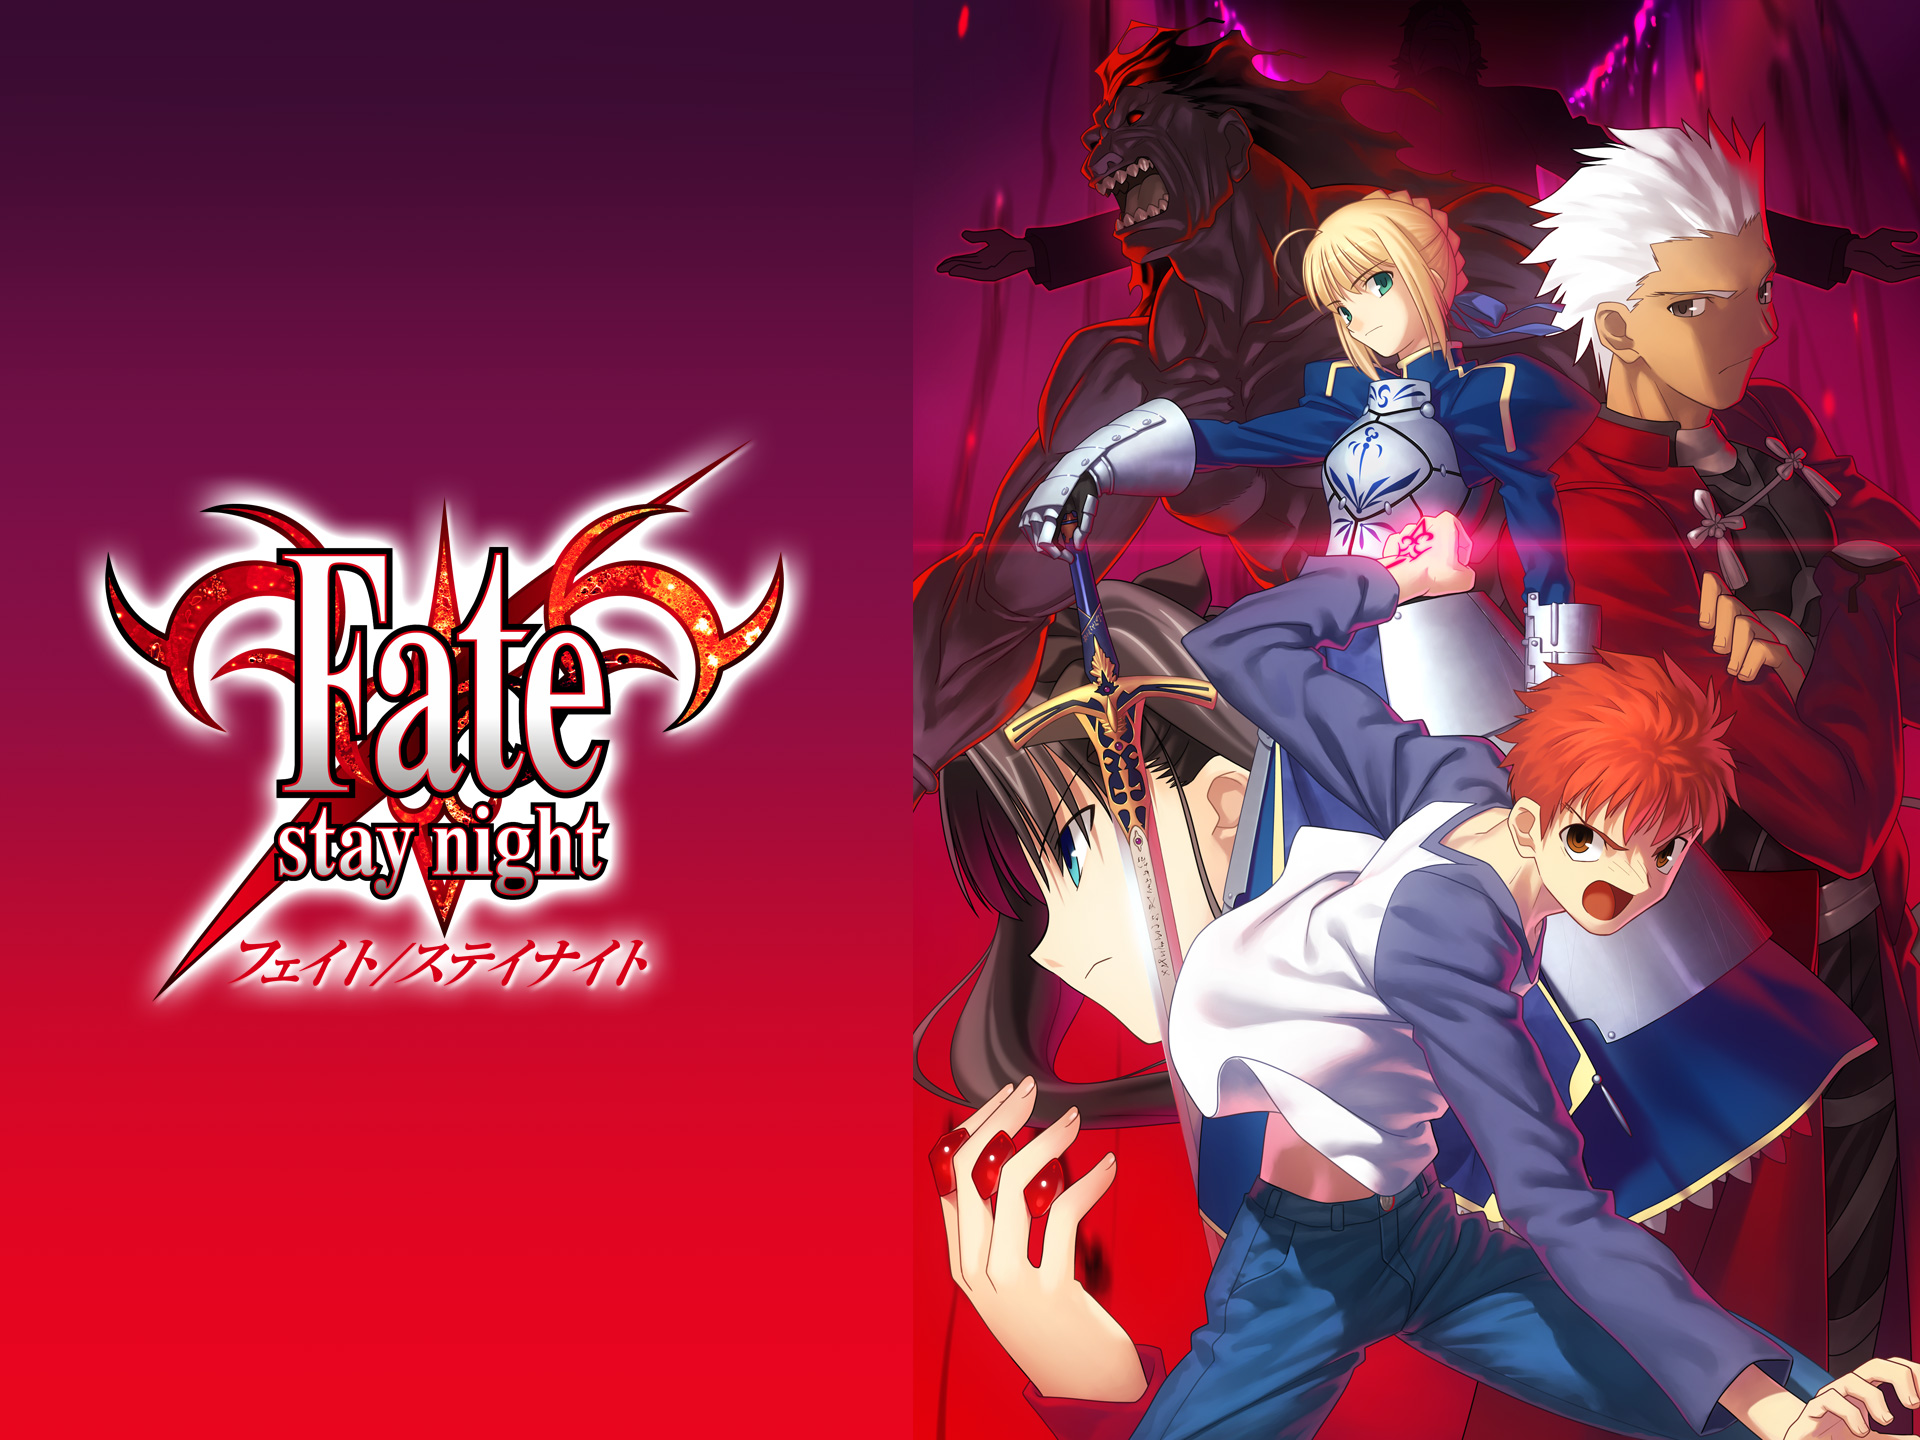 アニメ Fate Stay Night 第1話 始まりの日 フル動画 初月無料 動画配信サービスのビデオマーケット